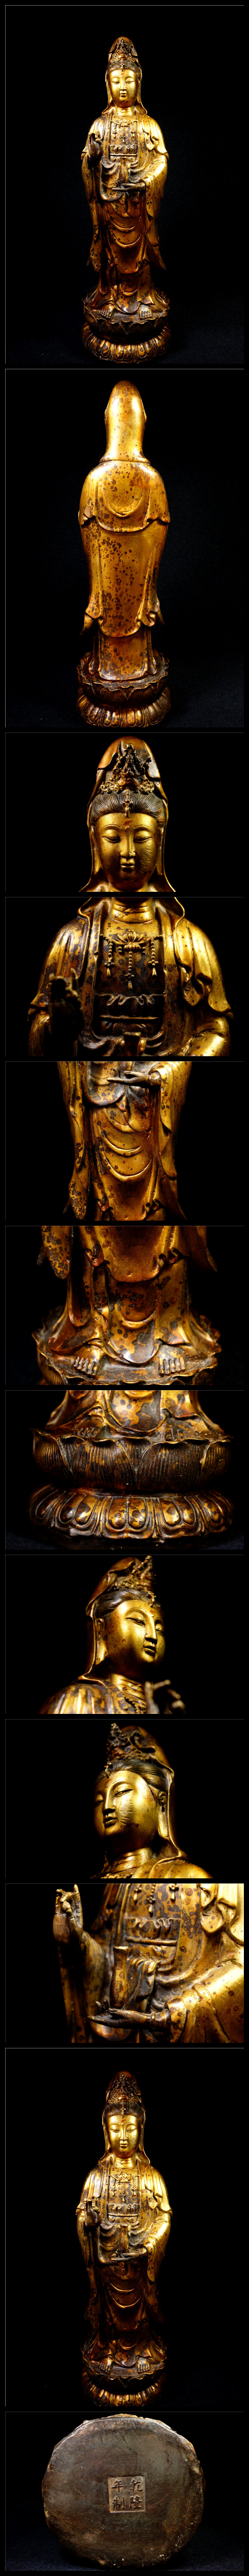 新品SALE金銅細工 仏教 大迫力観音菩薩造像高彫 乾隆年製 鎮宅 開運財運置物 極上質 仏像